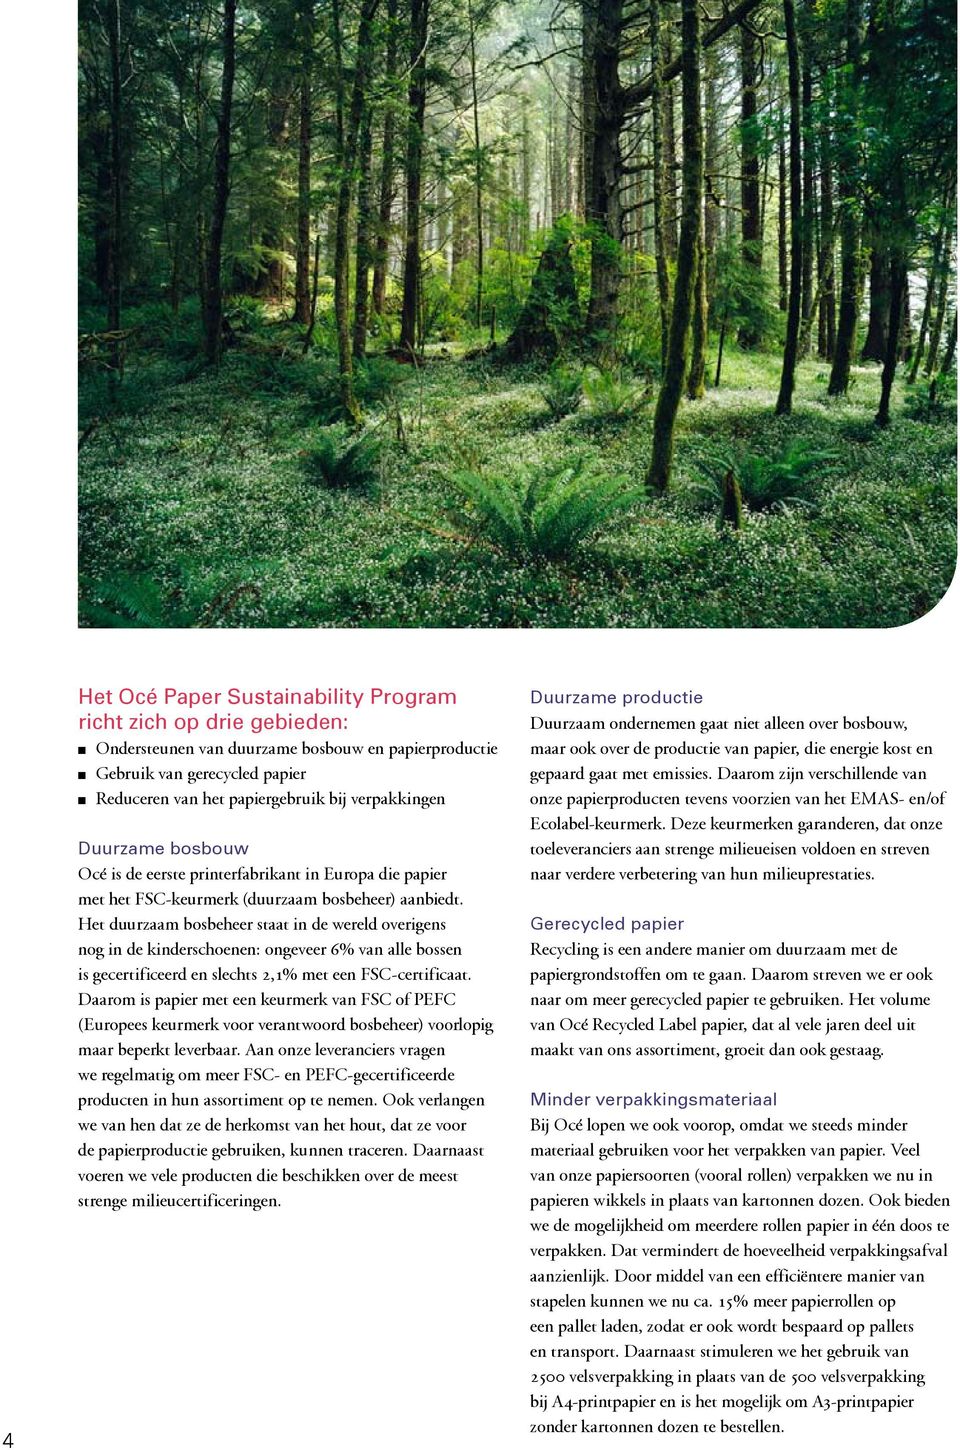 Het duurzaam bosbeheer staat in de wereld overigens nog in de kinderschoenen: ongeveer 6% van alle bossen is gecertificeerd en slechts 2,1% met een FSC-certificaat.